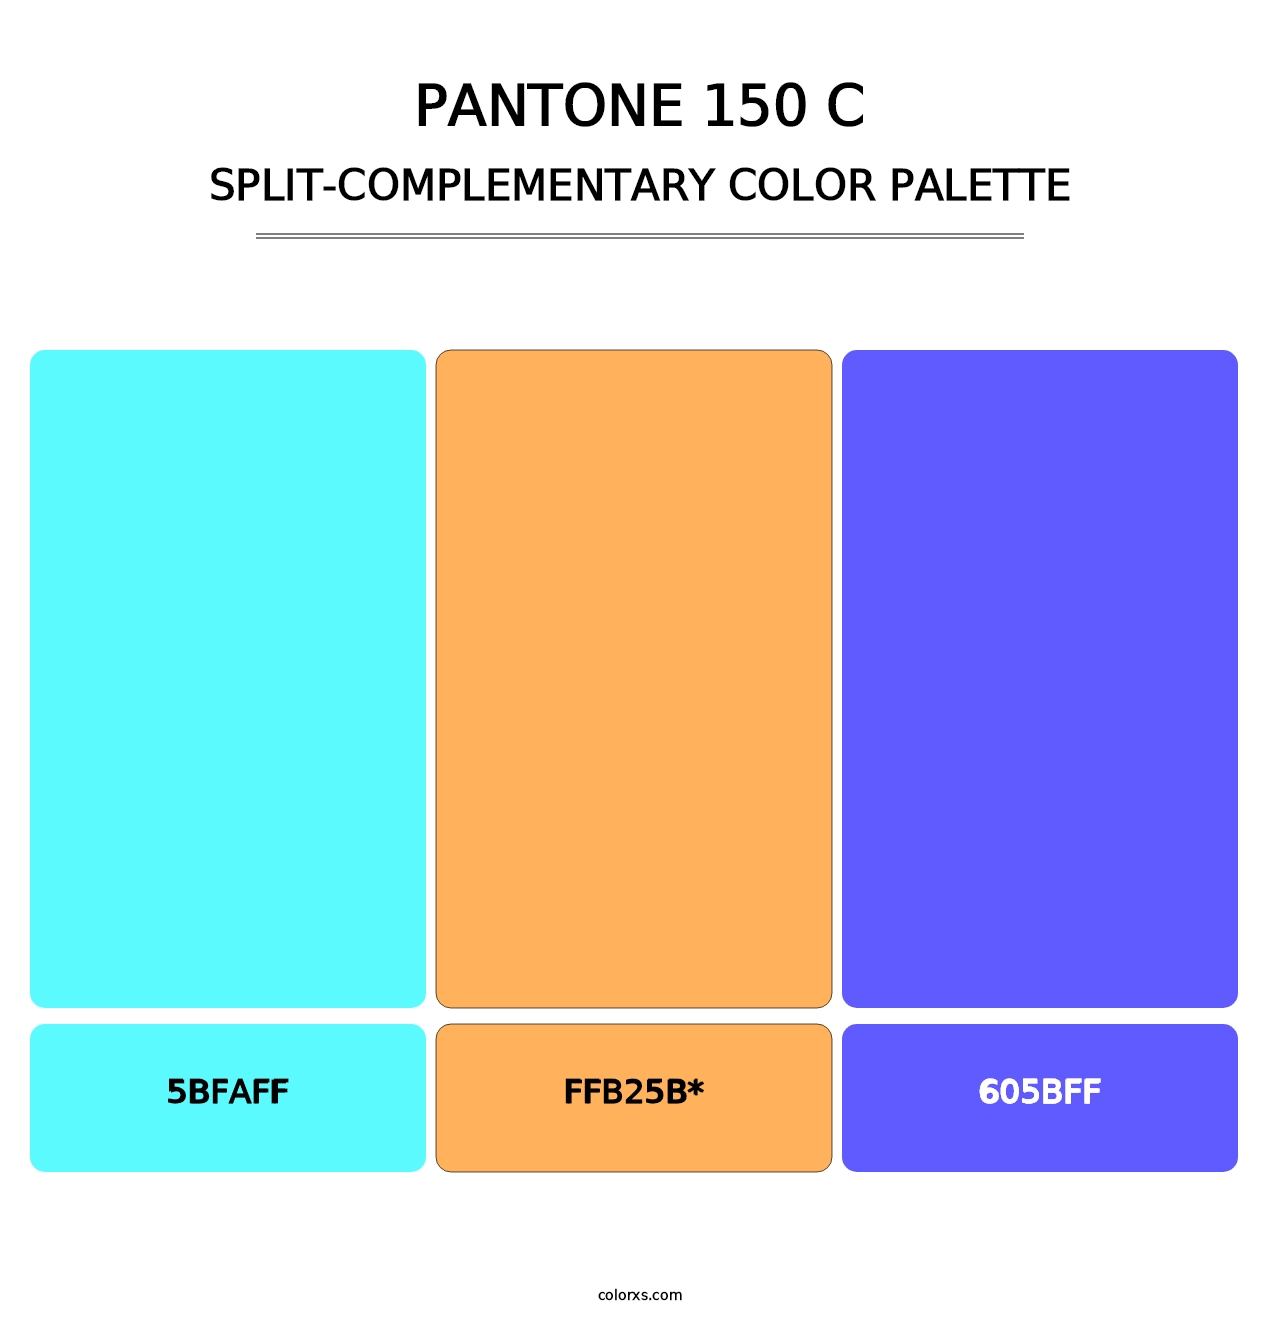 PANTONE 150 C - Split-Complementary Color Palette